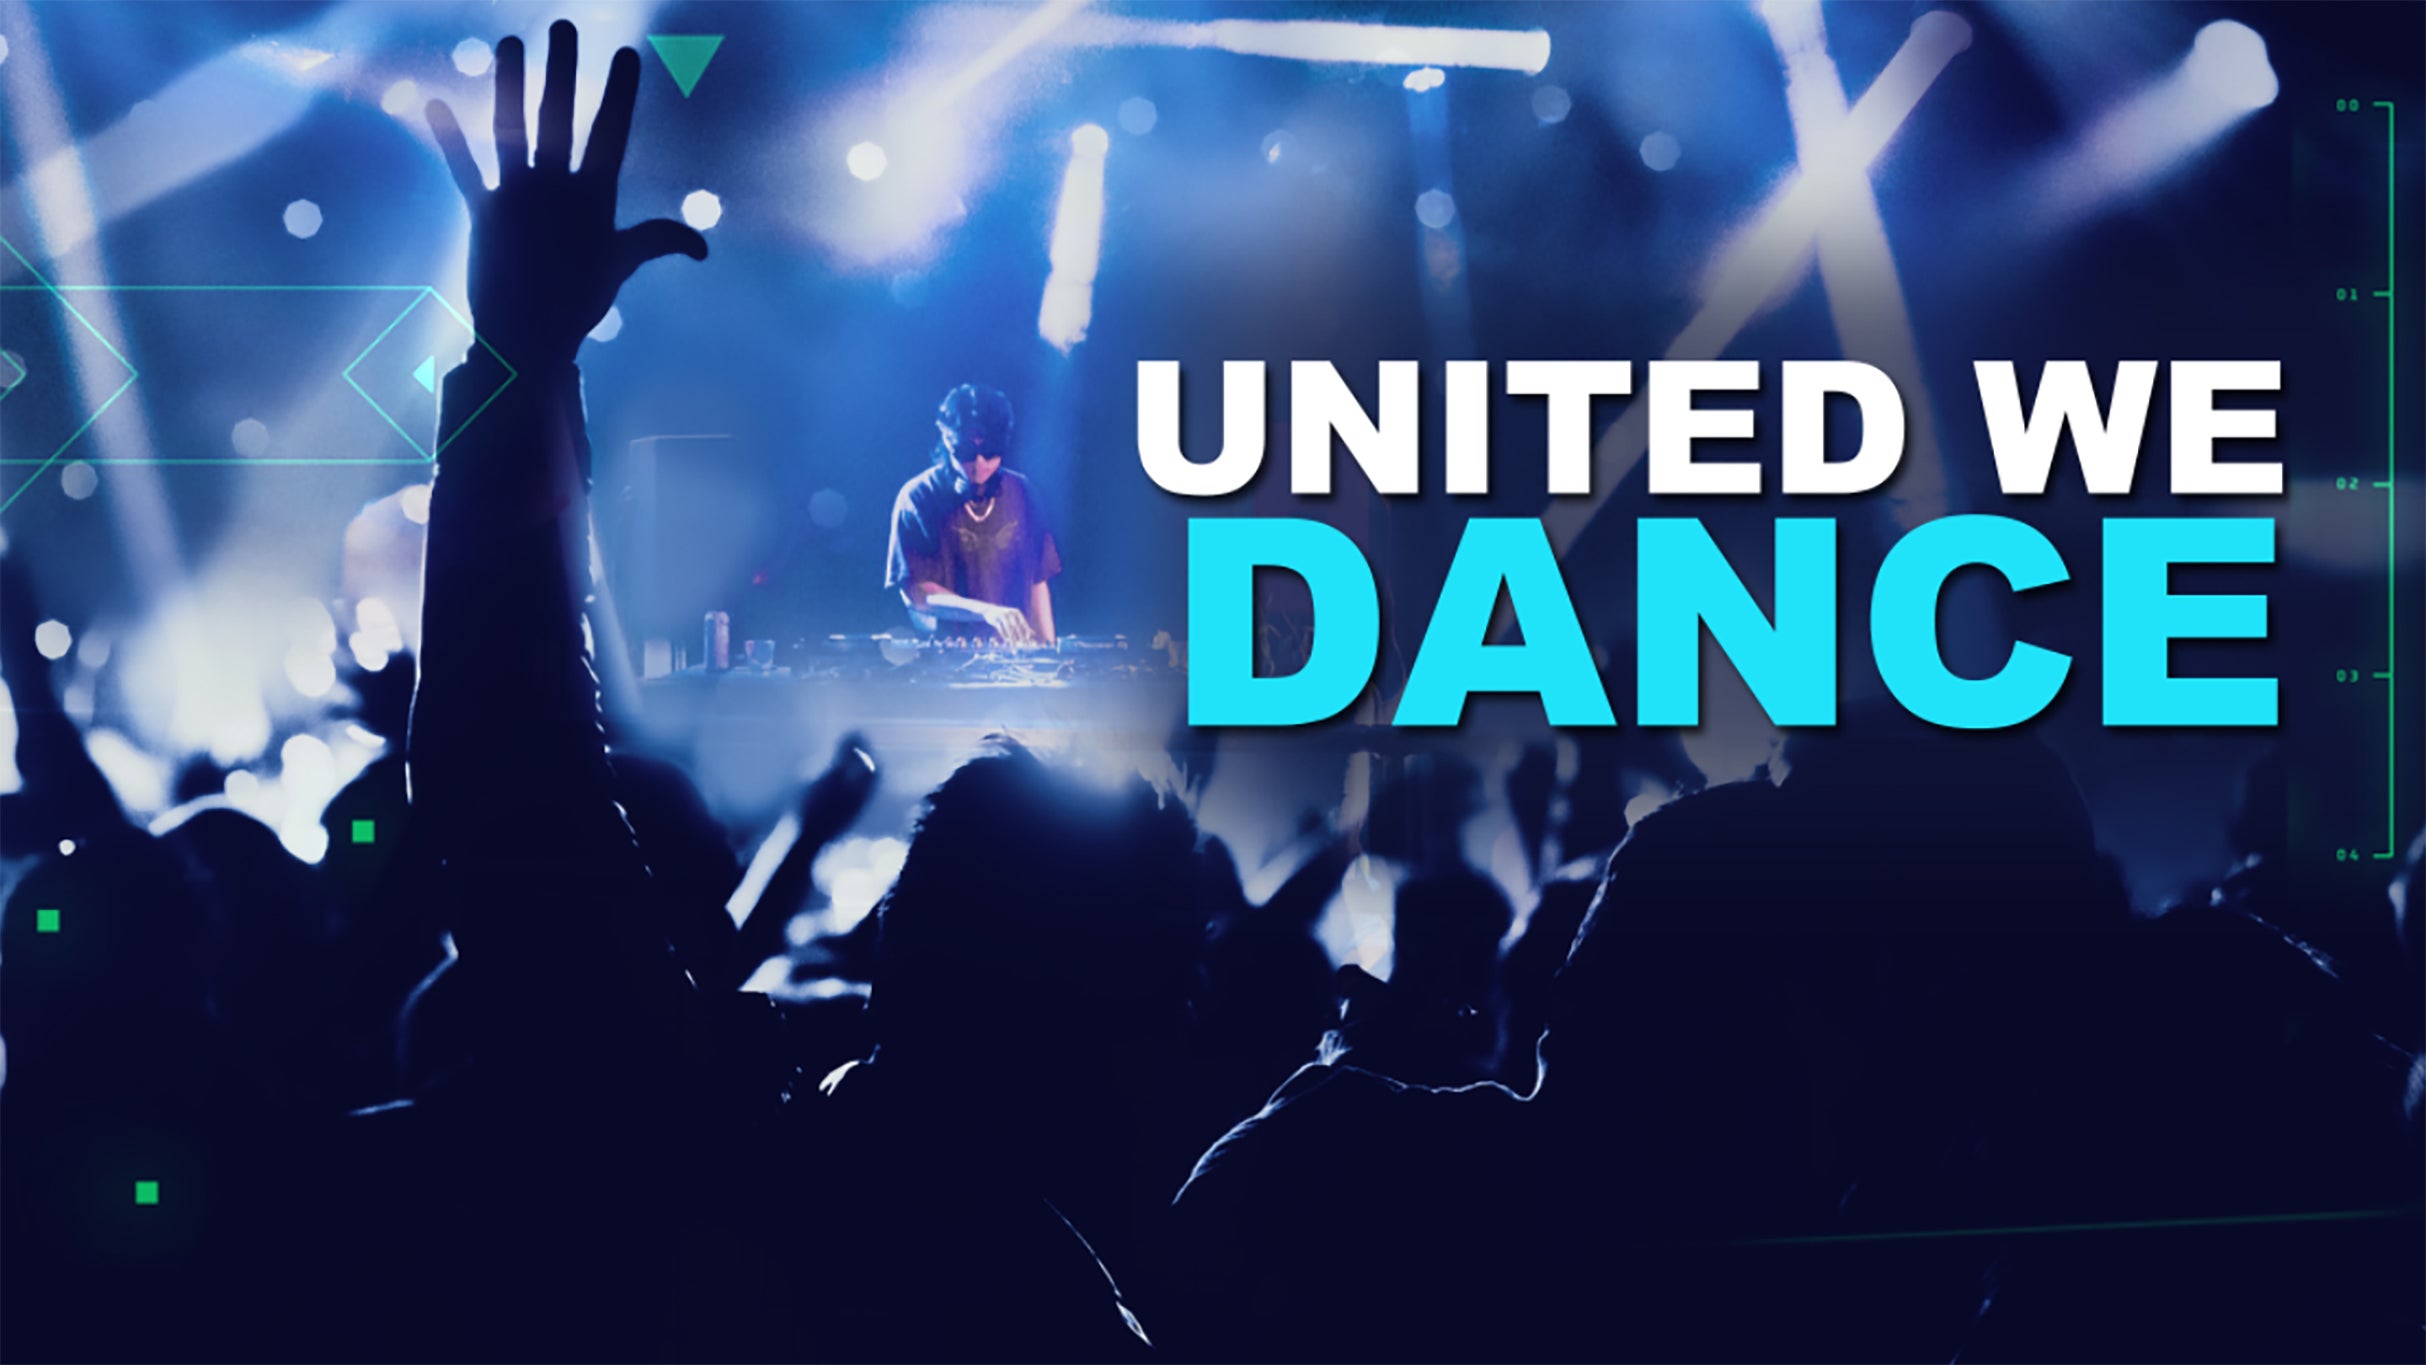 United We Dance free presale c0de for early tickets in Las Vegas